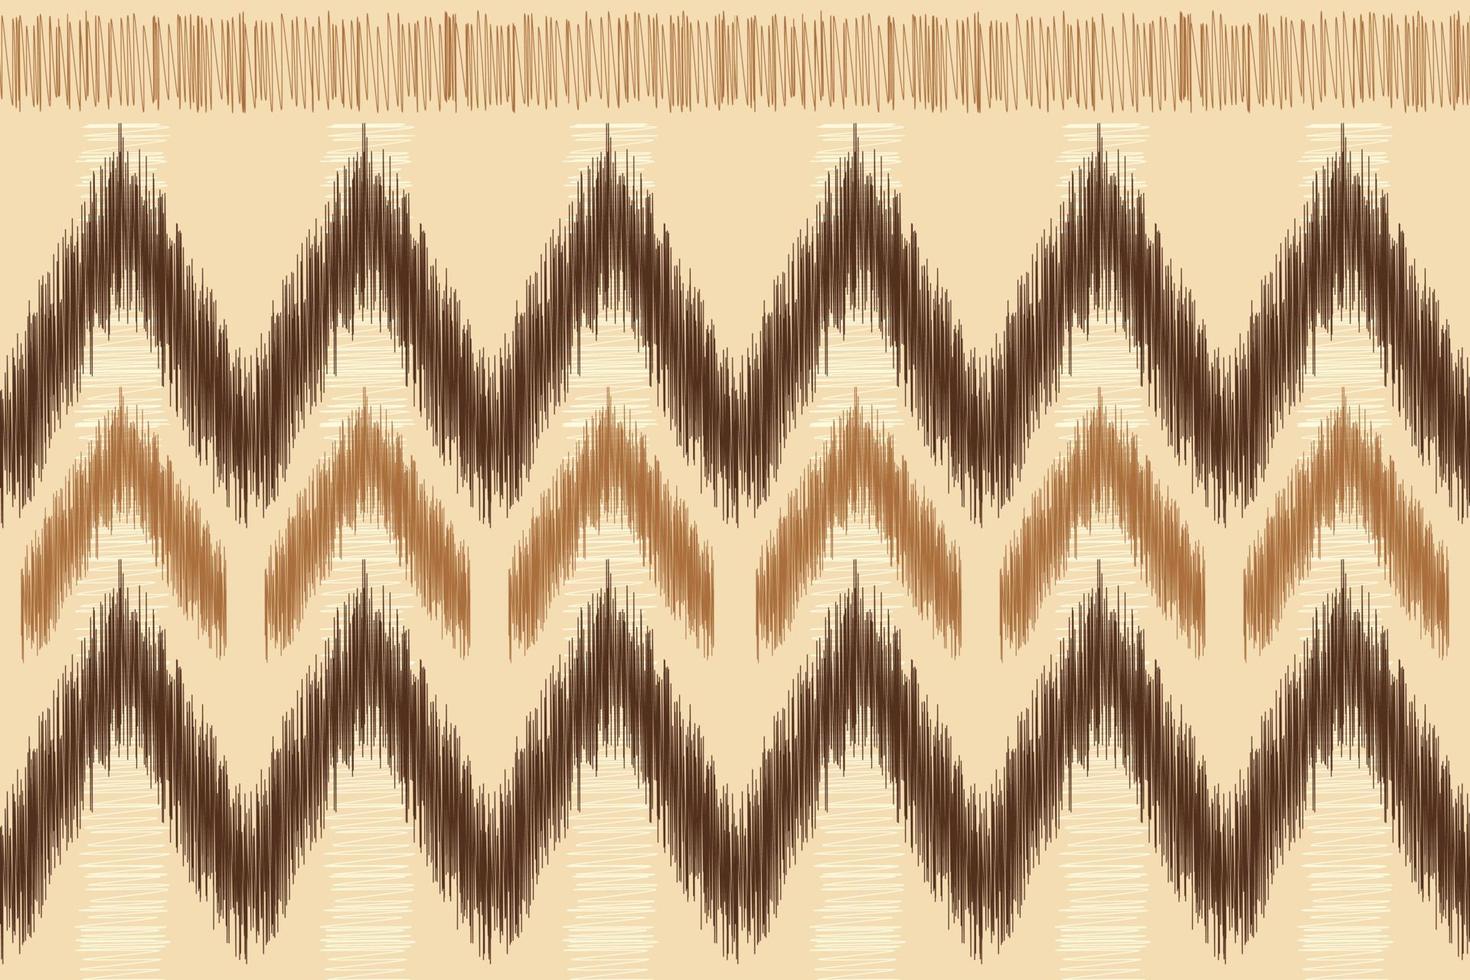 étnico ikat tela modelo geométrico estilo.africano ikat bordado étnico oriental modelo marrón crema antecedentes. resumen,vector,ilustración.para textura,ropa,envoltura,decoración,alfombra. vector